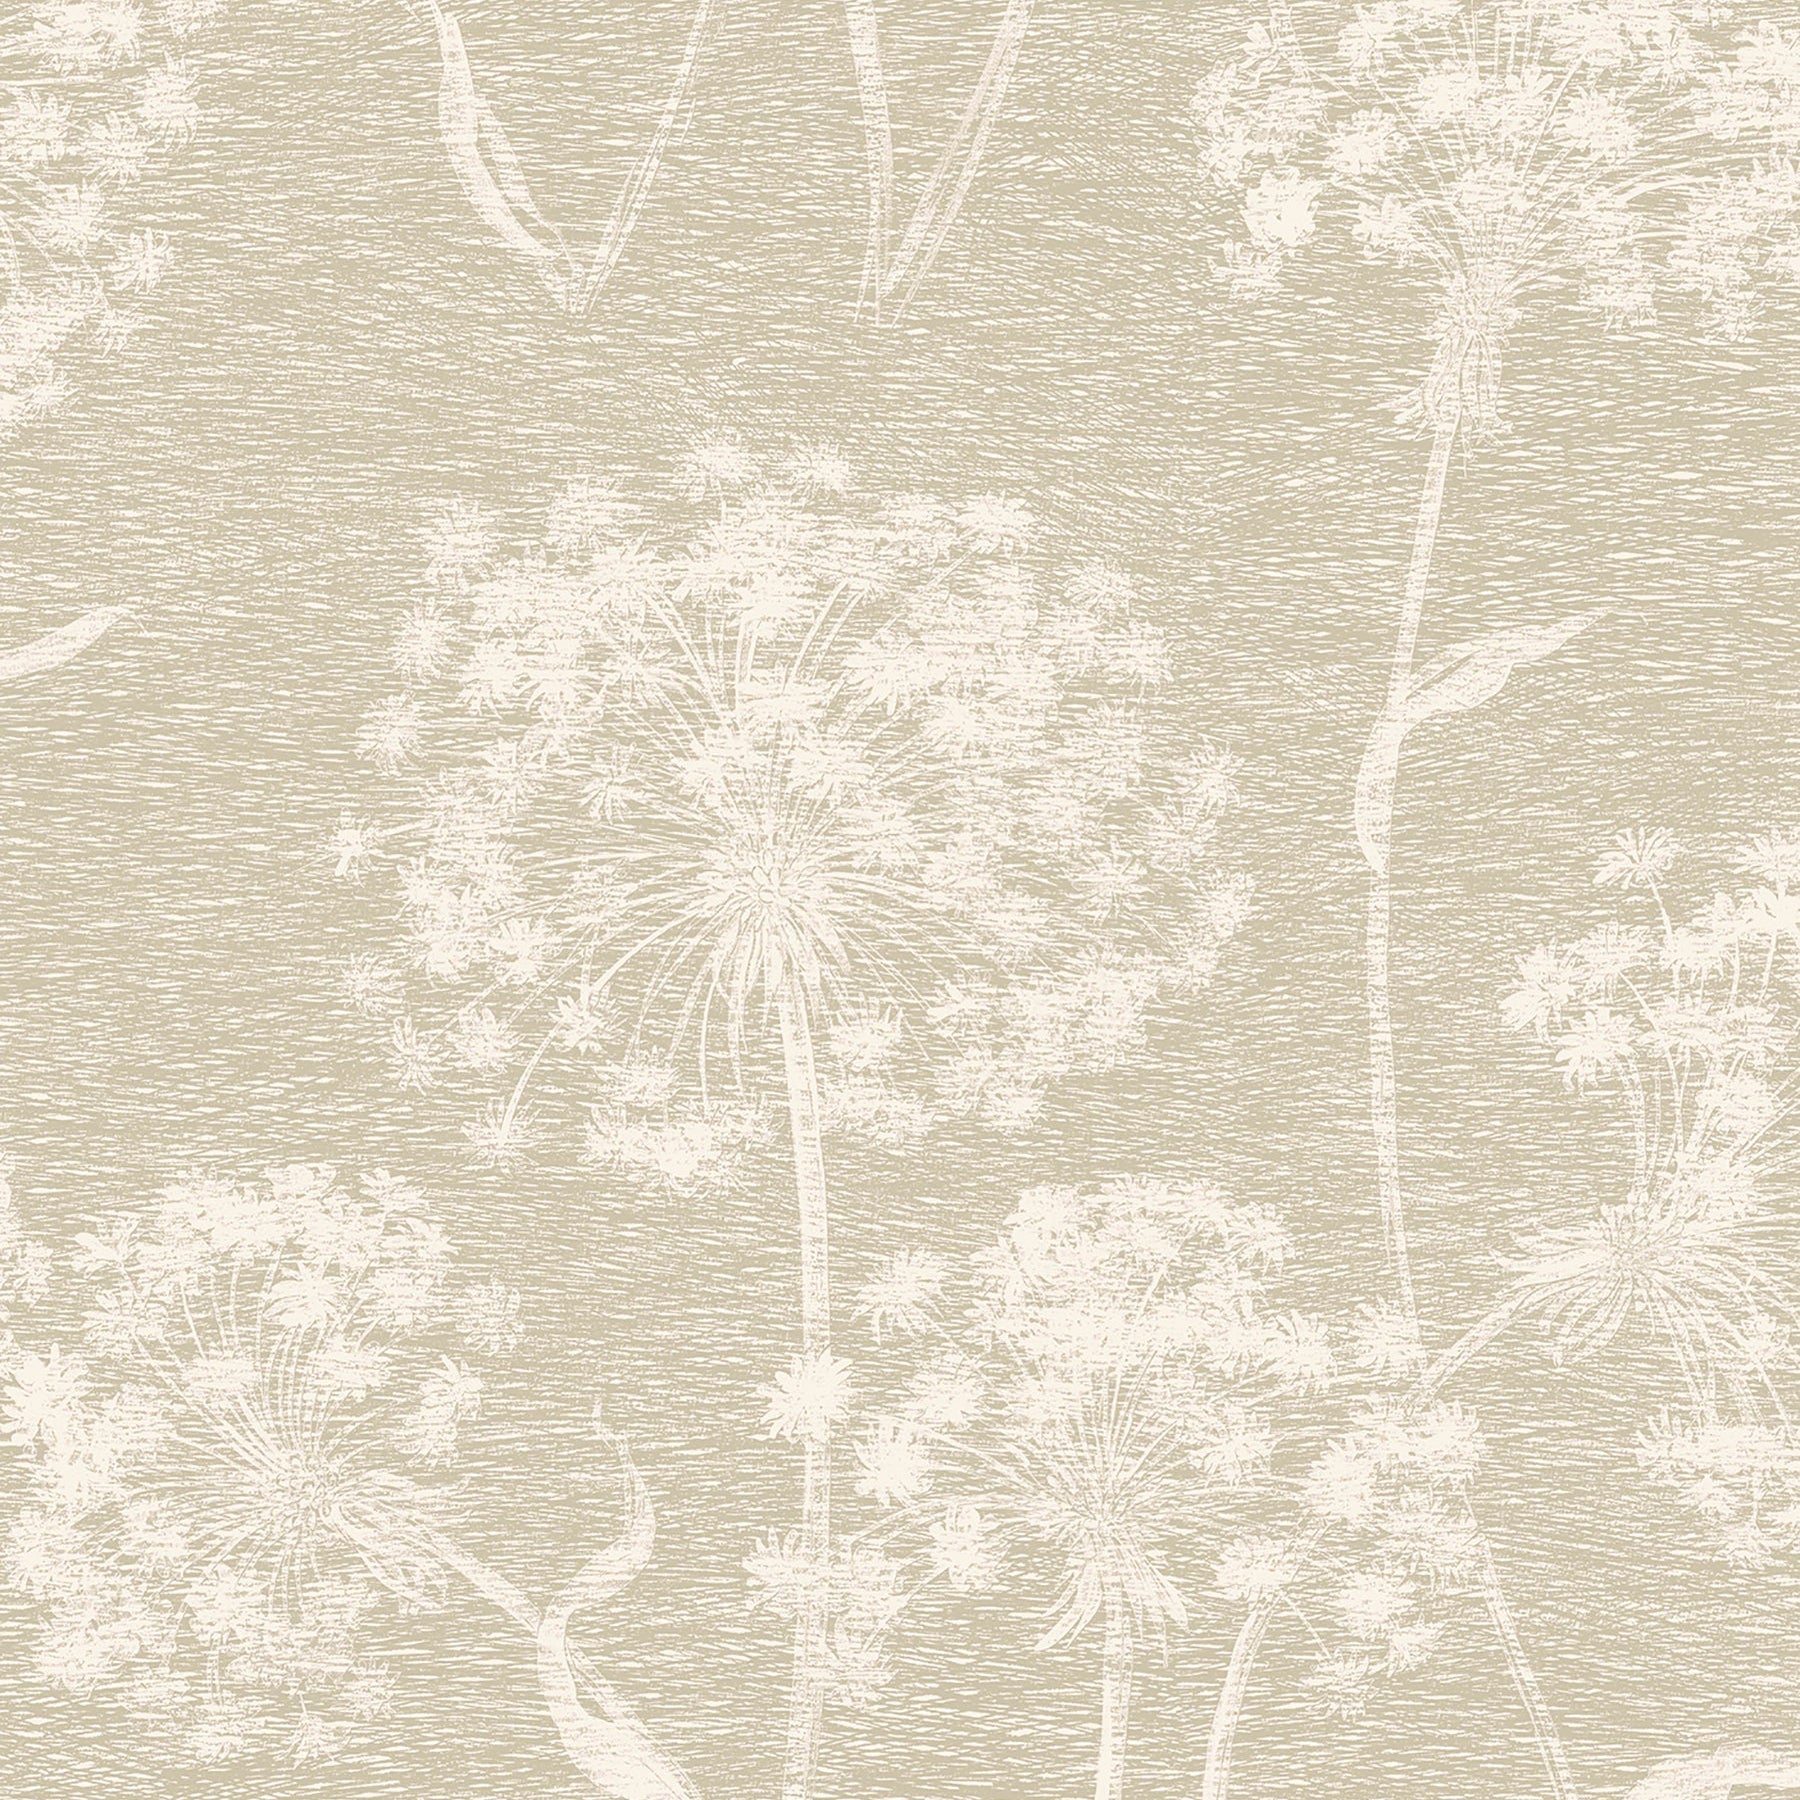 Wallshoppe Dandelion Floral Print Wallpaper